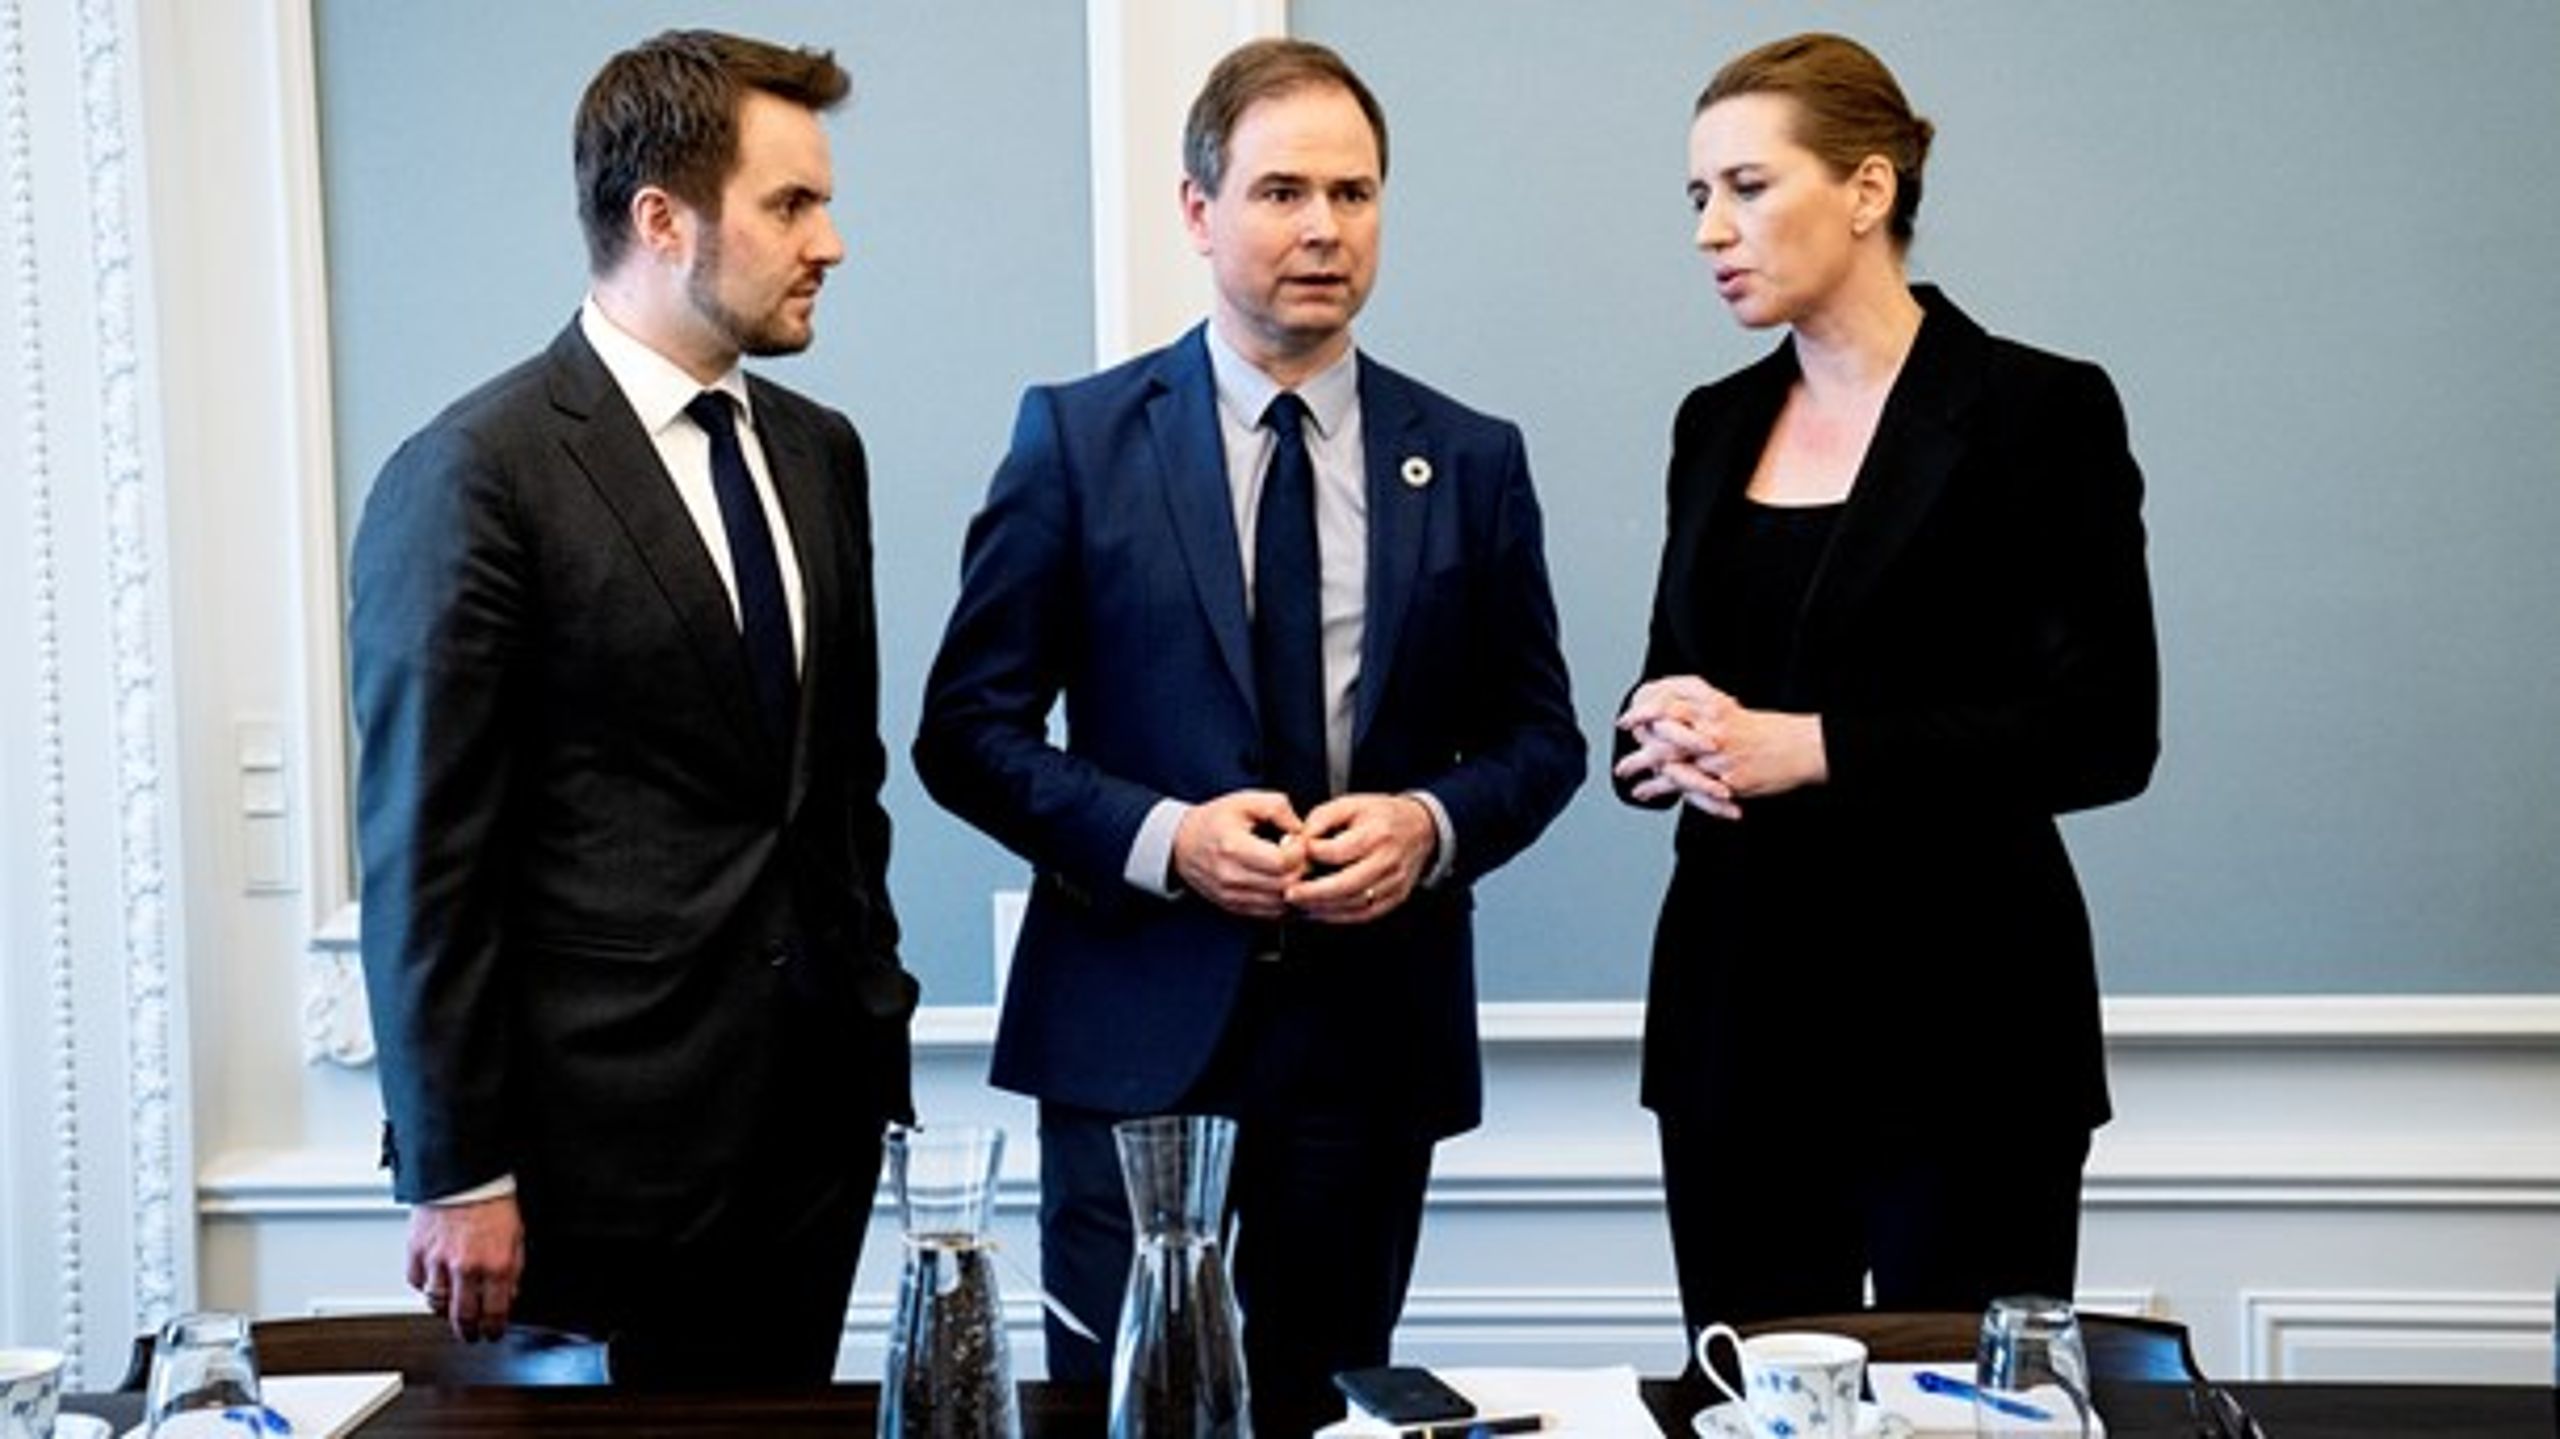 Finansminister Nicolai Wammen (S) har indtil flere forhandlinger på programmet i december, mens erhvervsminister Simon Kollerup (S) forhandler om kompensation til danske minkavlere.